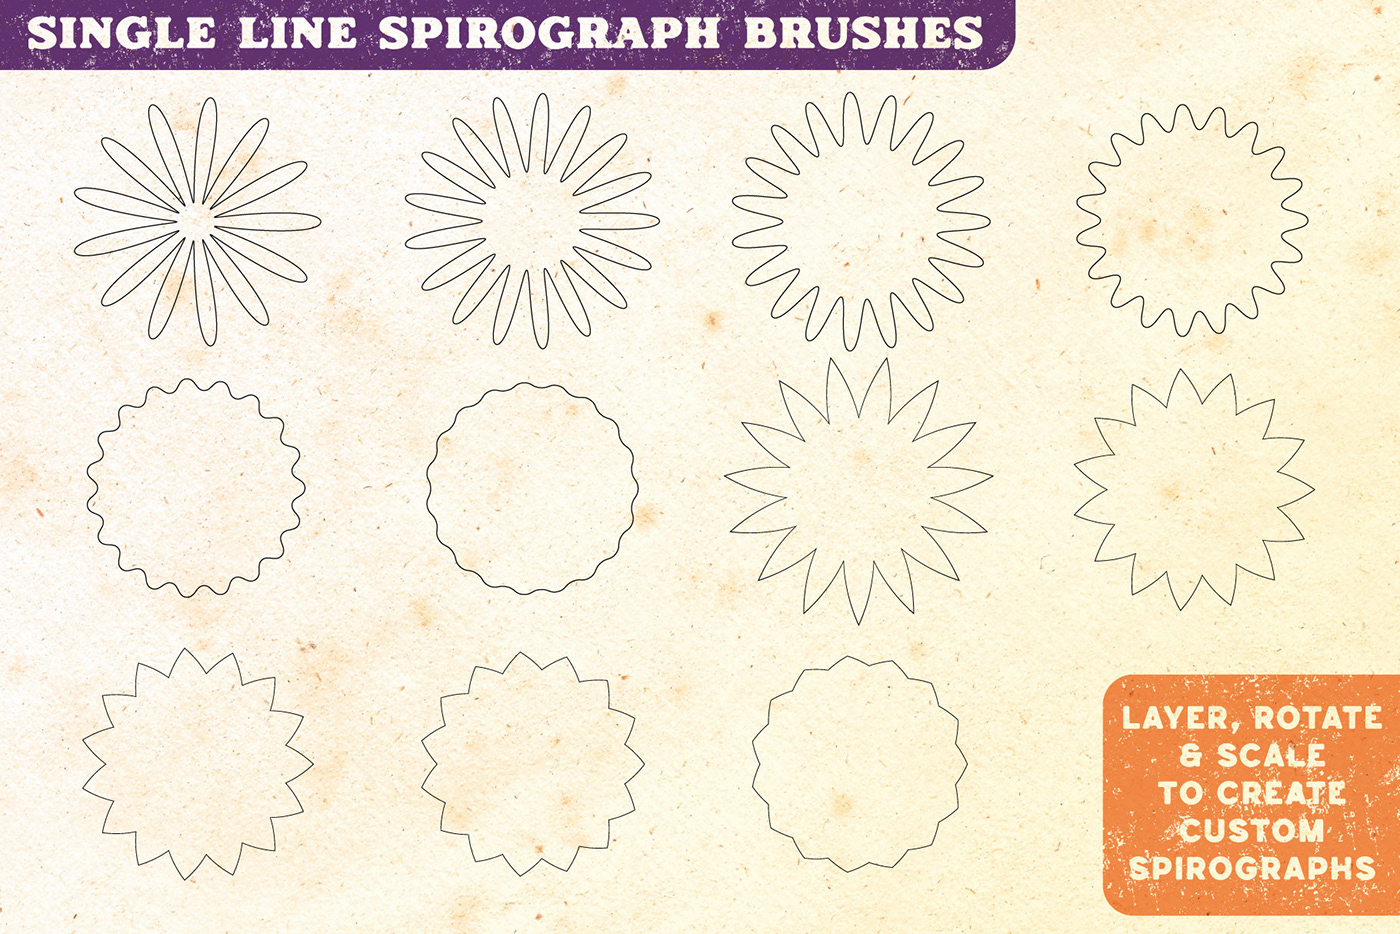 Spirograph fractal Retro retro design Illustrator Brushes affinity brushes fractals guilloche spirographs